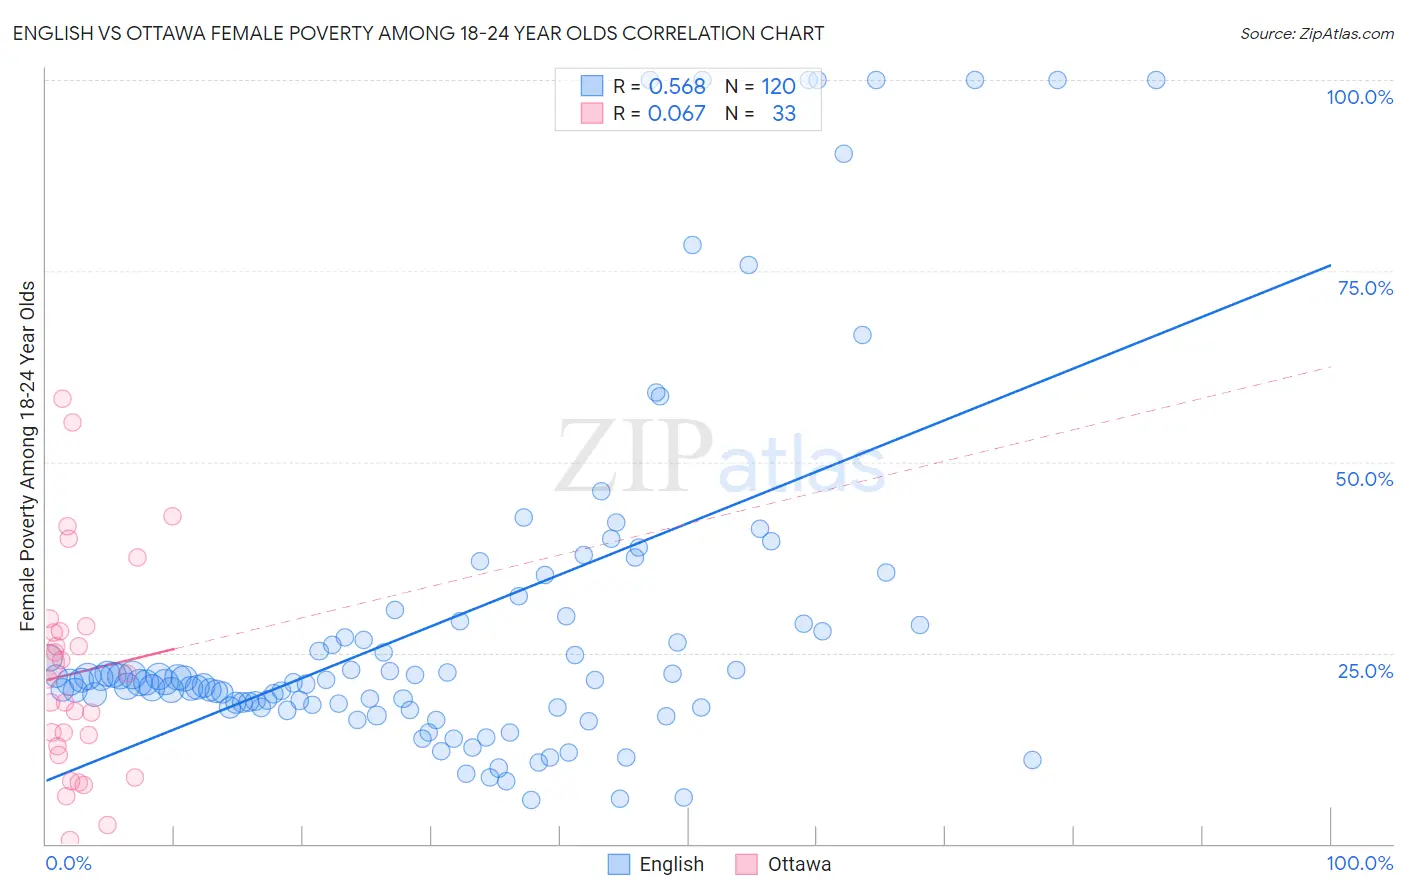 English vs Ottawa Female Poverty Among 18-24 Year Olds